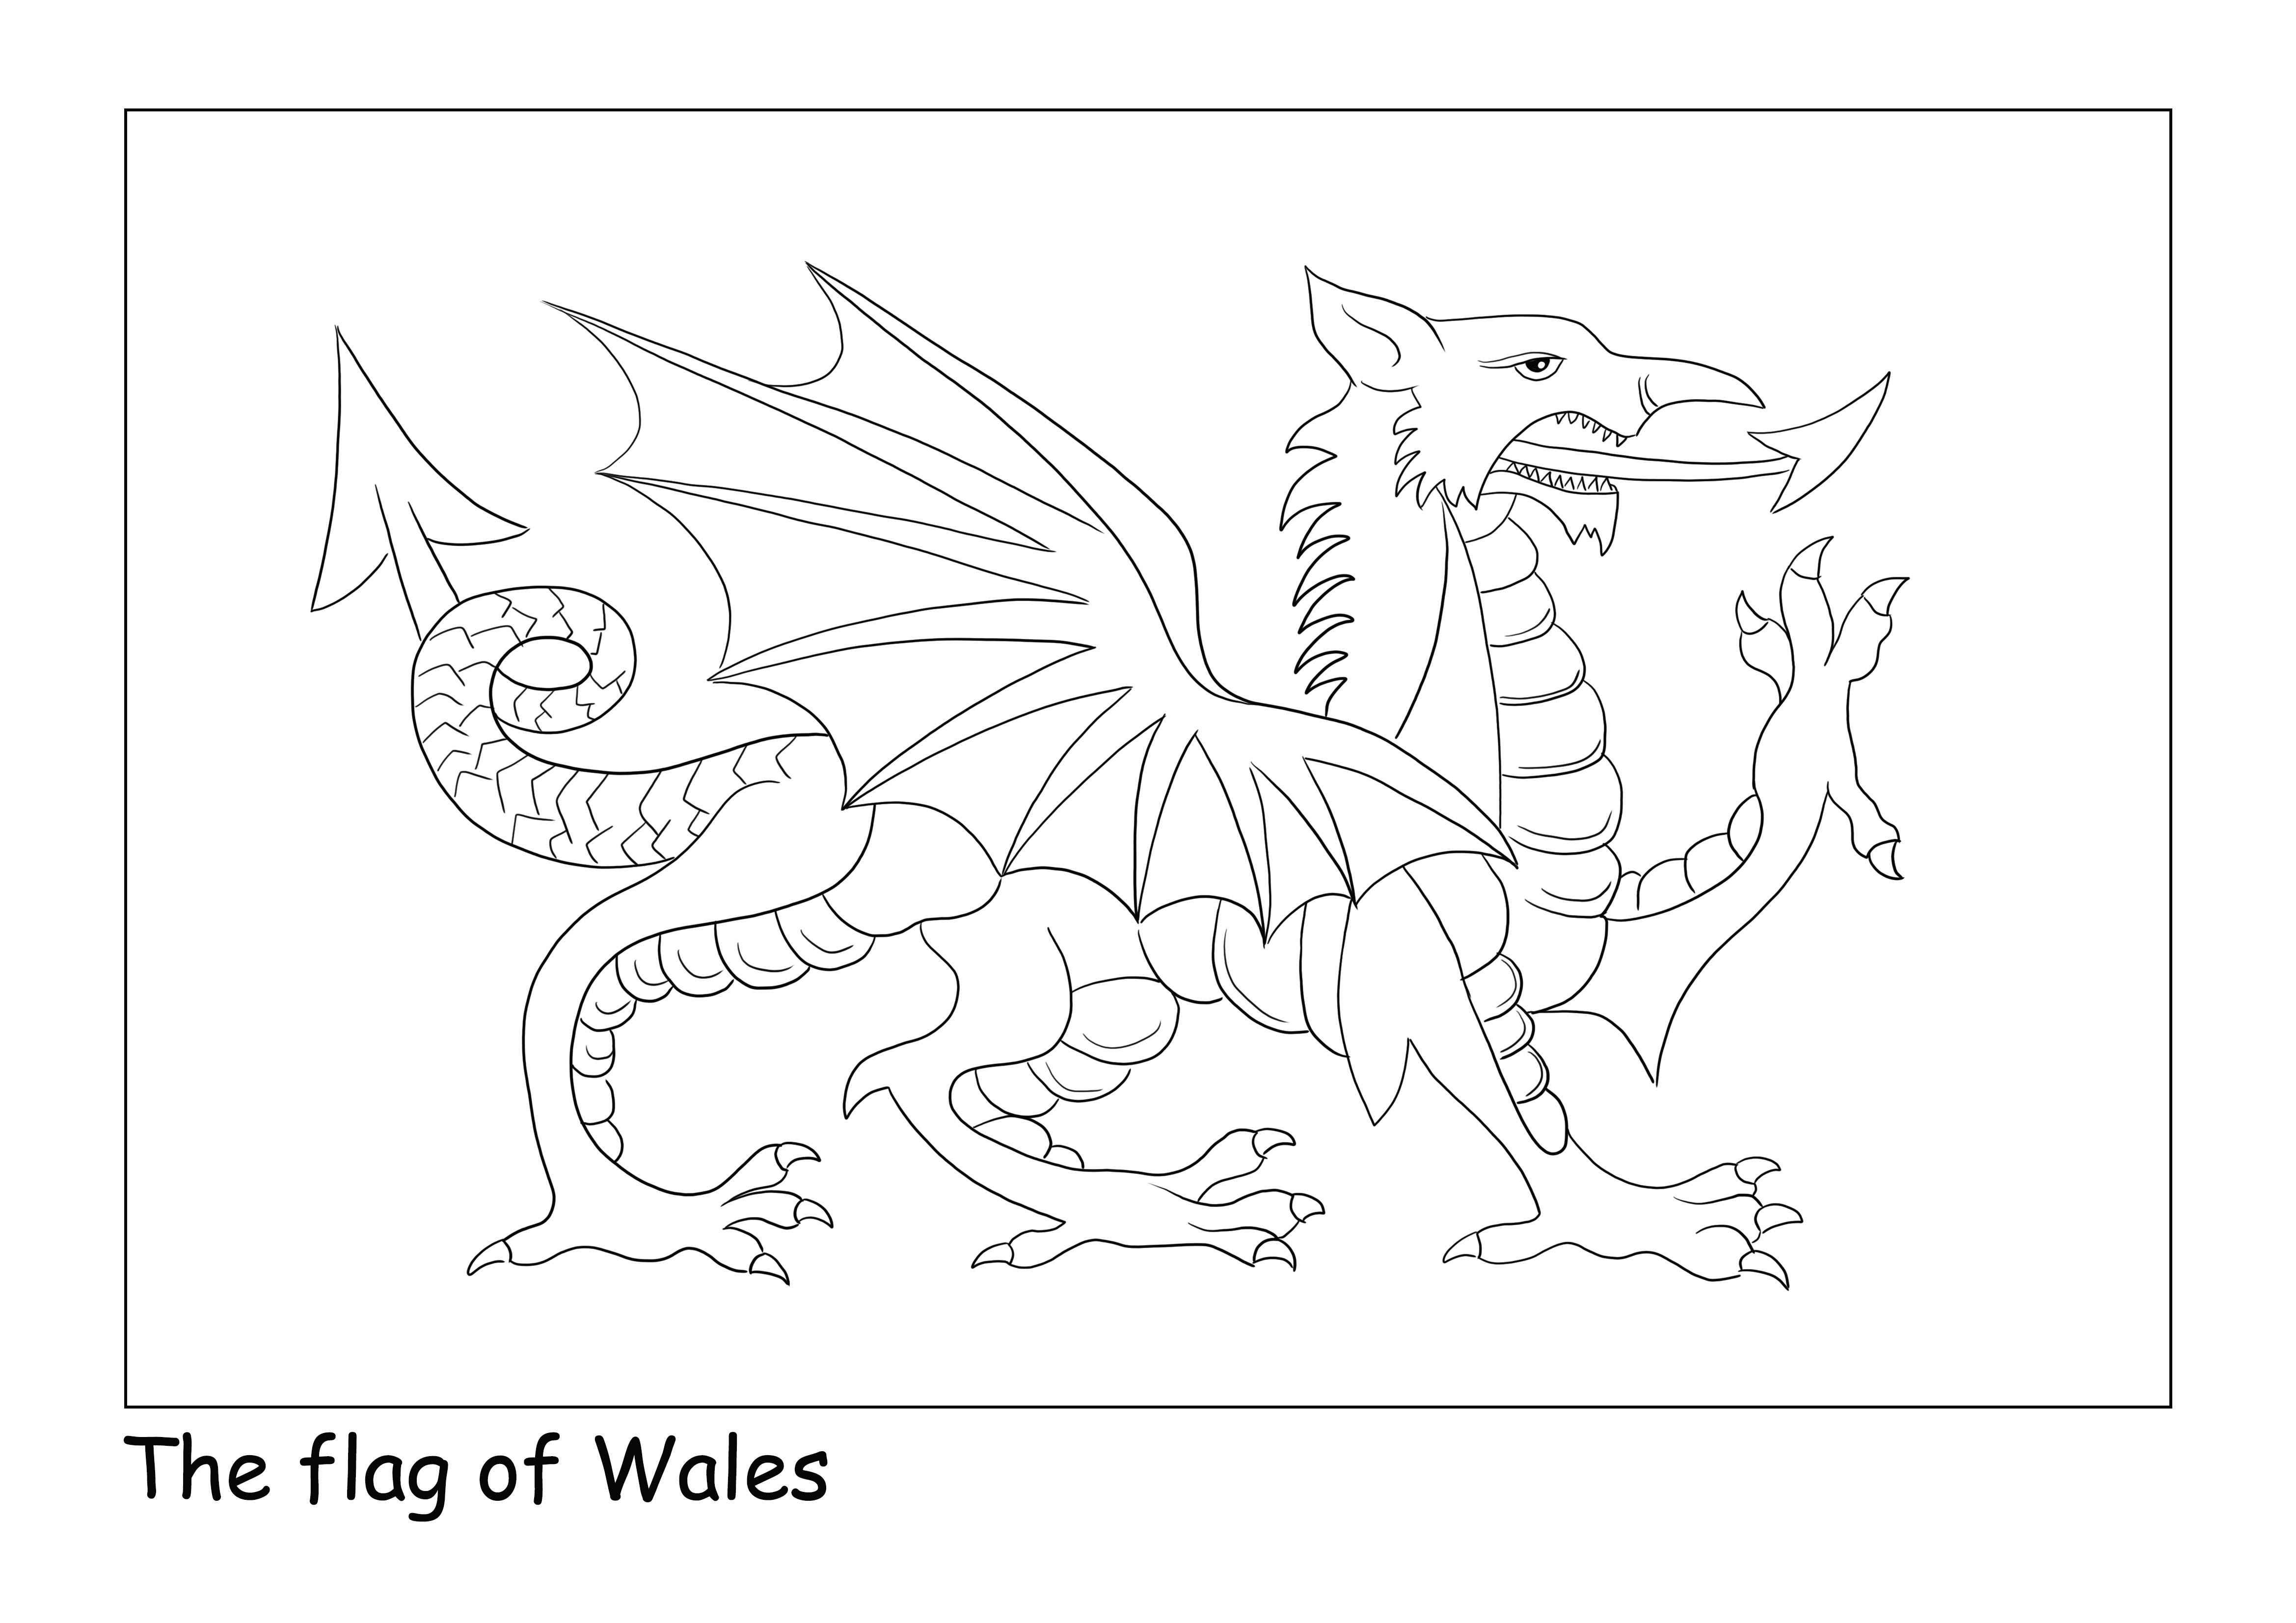 Walesin lippu tavallisella sivulla helpon värittämisen ja arkin lataamisen helpottamiseksi